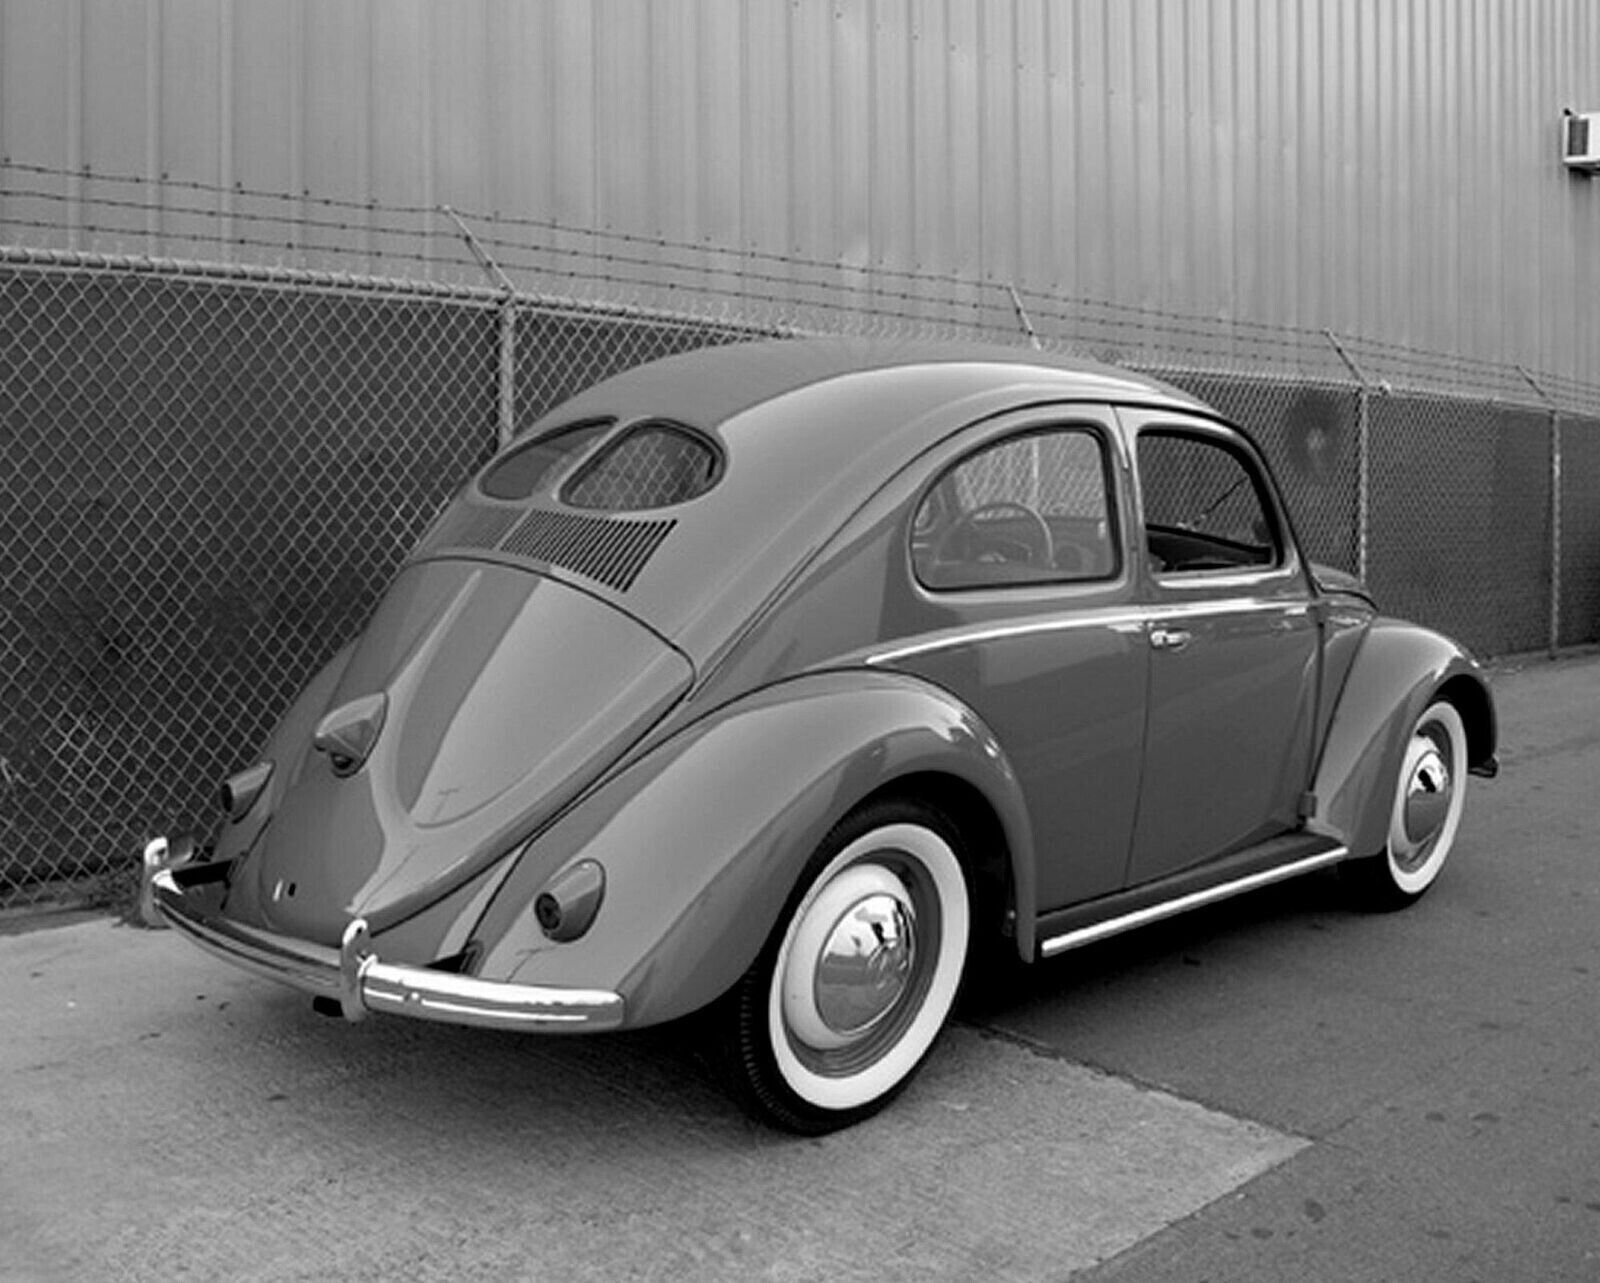 1949 VOLKSWAGEN Bug SPLIT WINDOW Beetle Classic Car Picture Photo 5x7